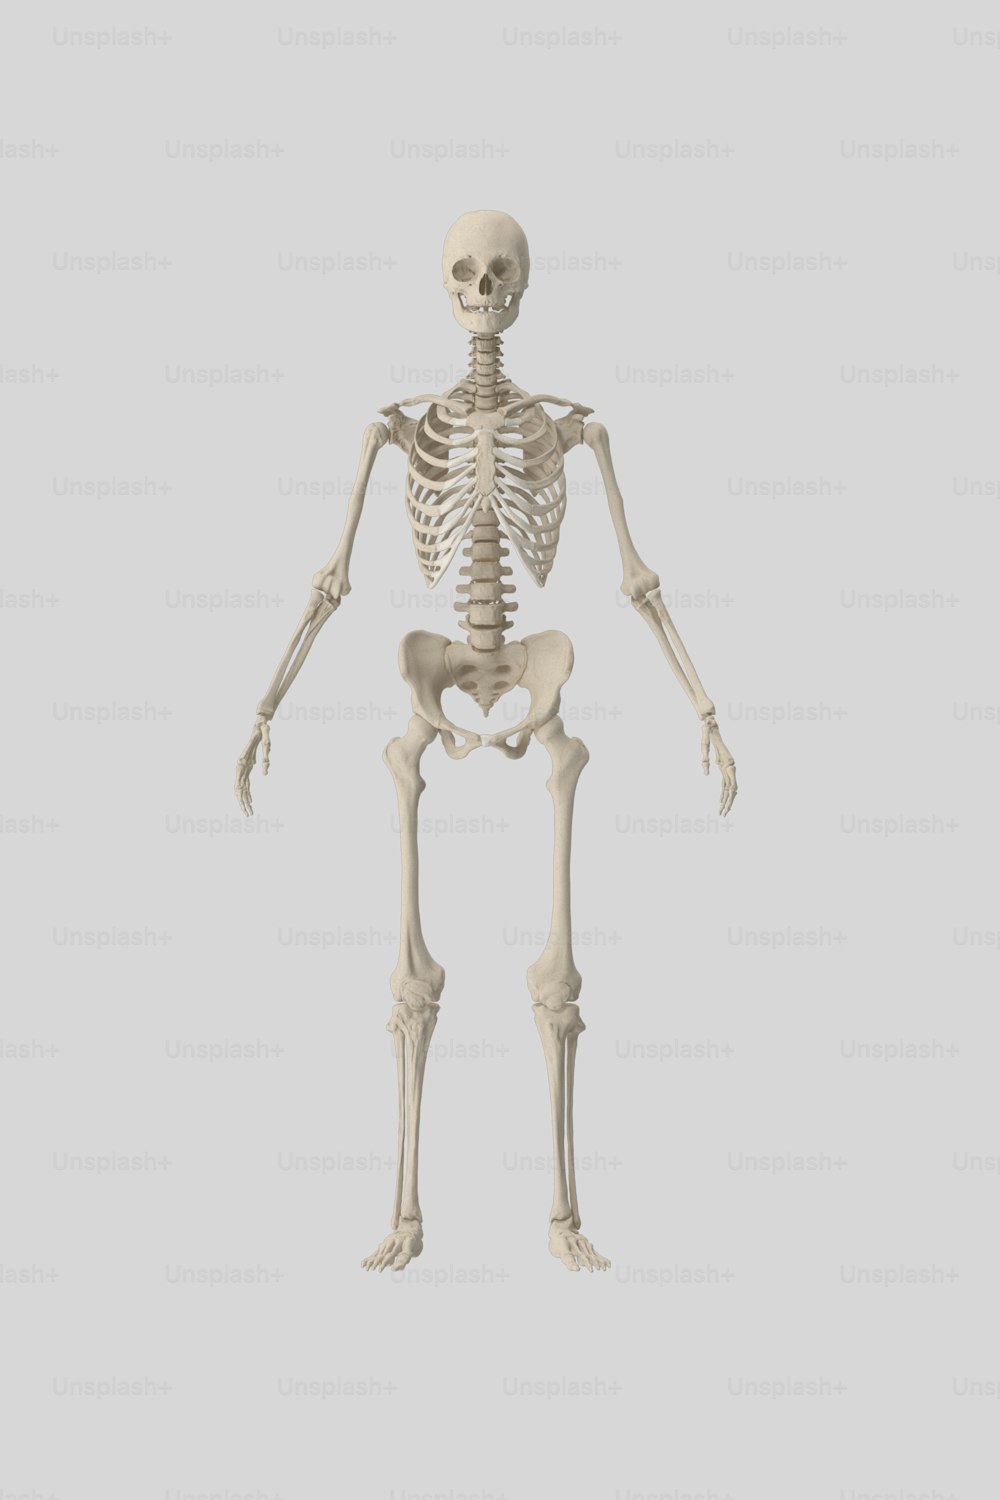 Un squelette humain est montré sur cette image